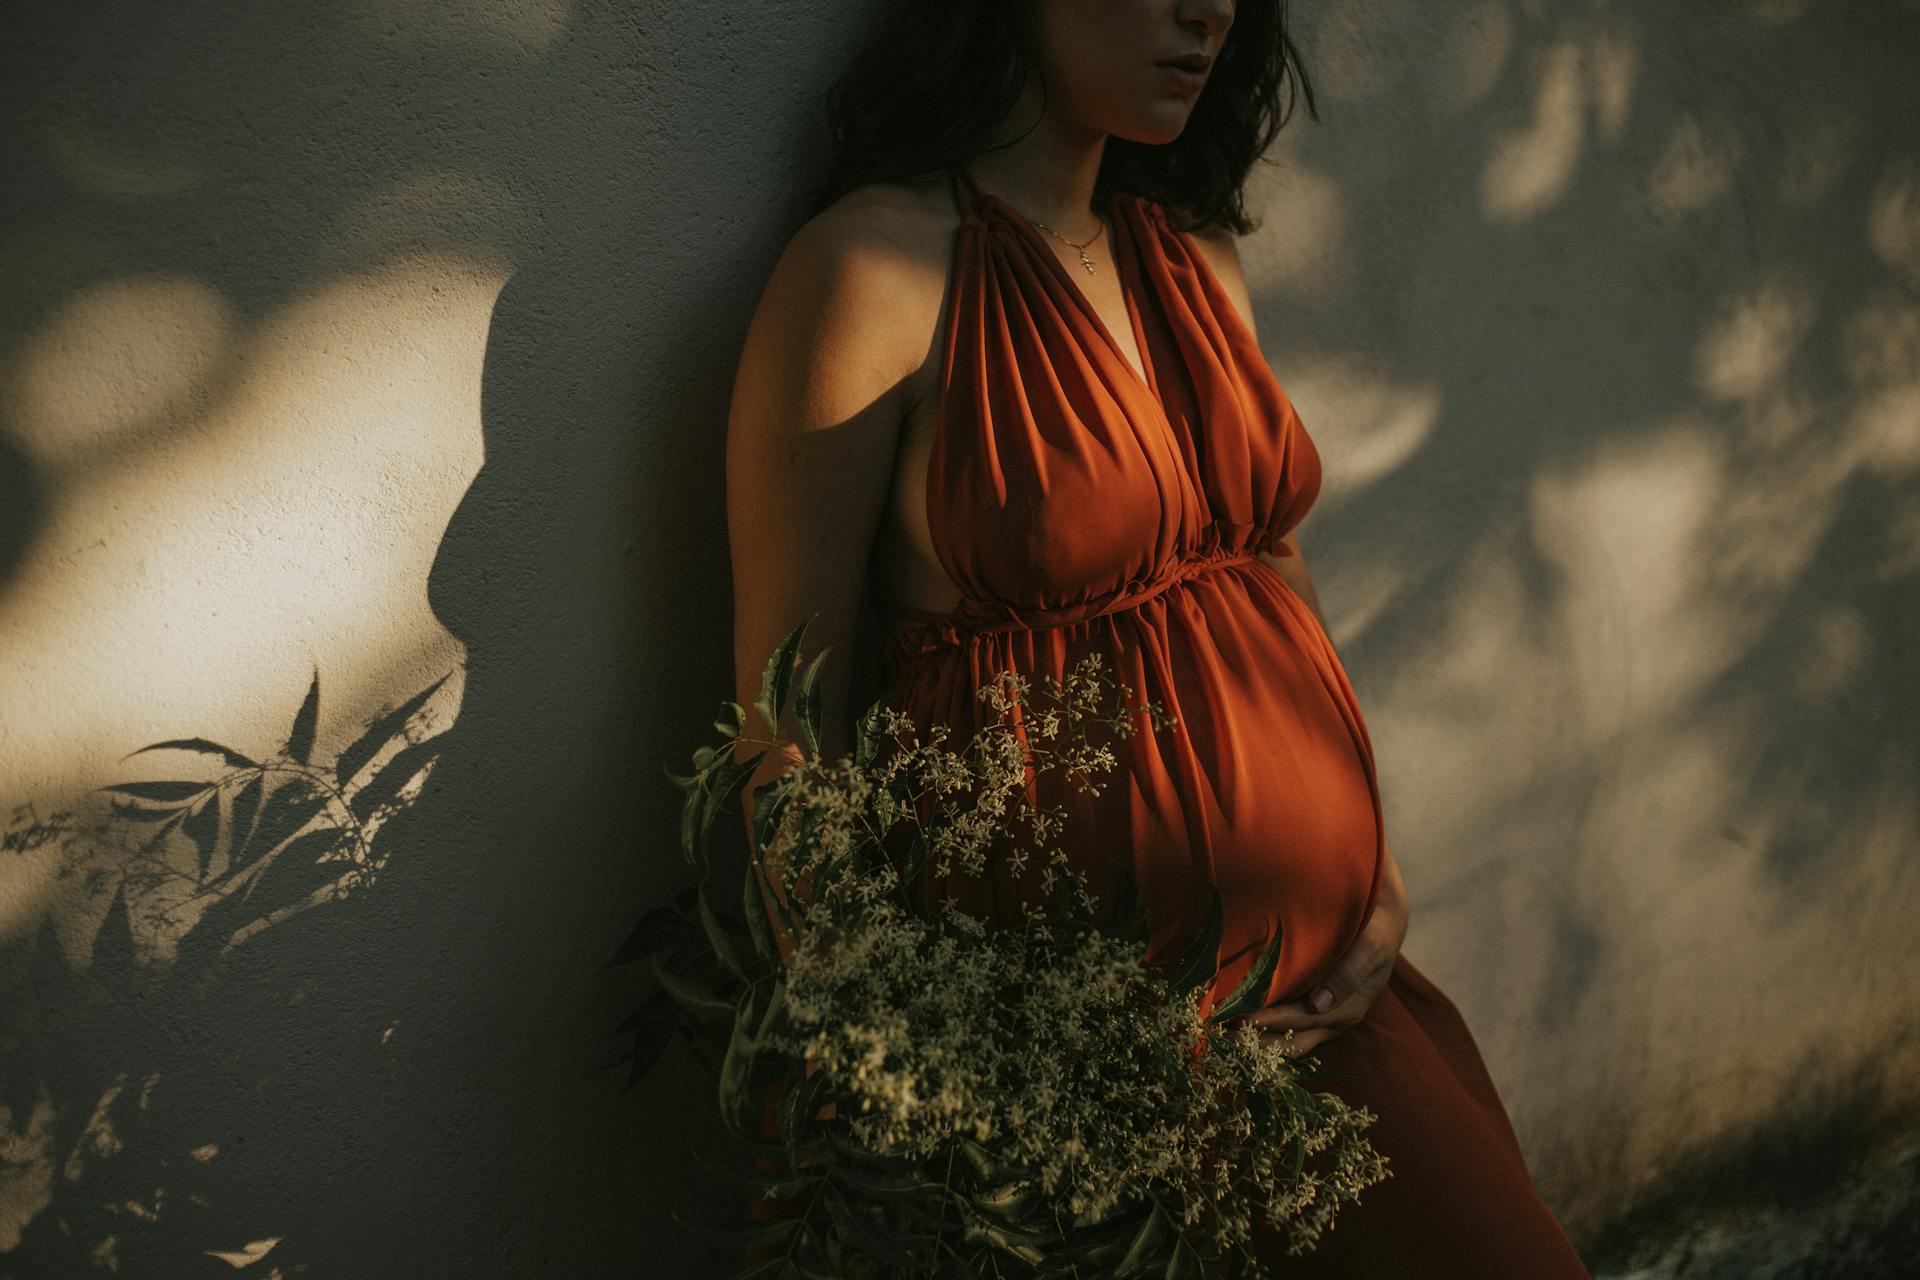 Eine schwangere Frau, die an einer Wand steht | Quelle: Pexels